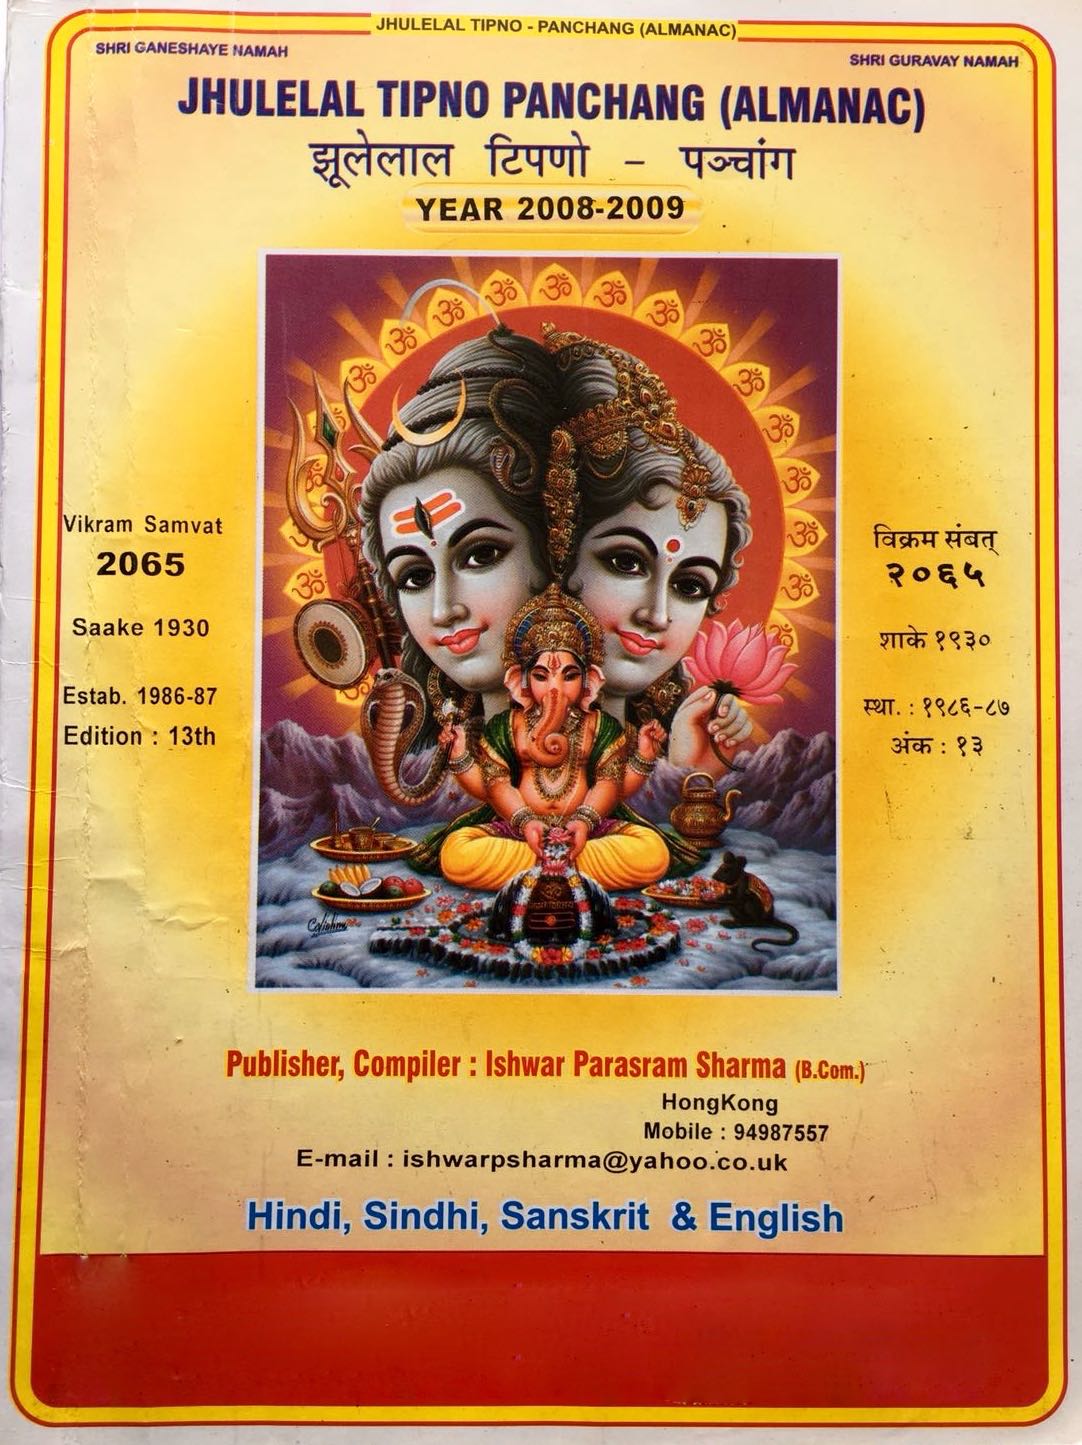 Jhulelal Tipno Panchang (Almanac) Year 2008-2009 Publisher, Compiler by Ishwar Parsram Sharma (B.Com.) in Hindi, Sindhi, Sanskrit & English -Top cover page English and Hindi side